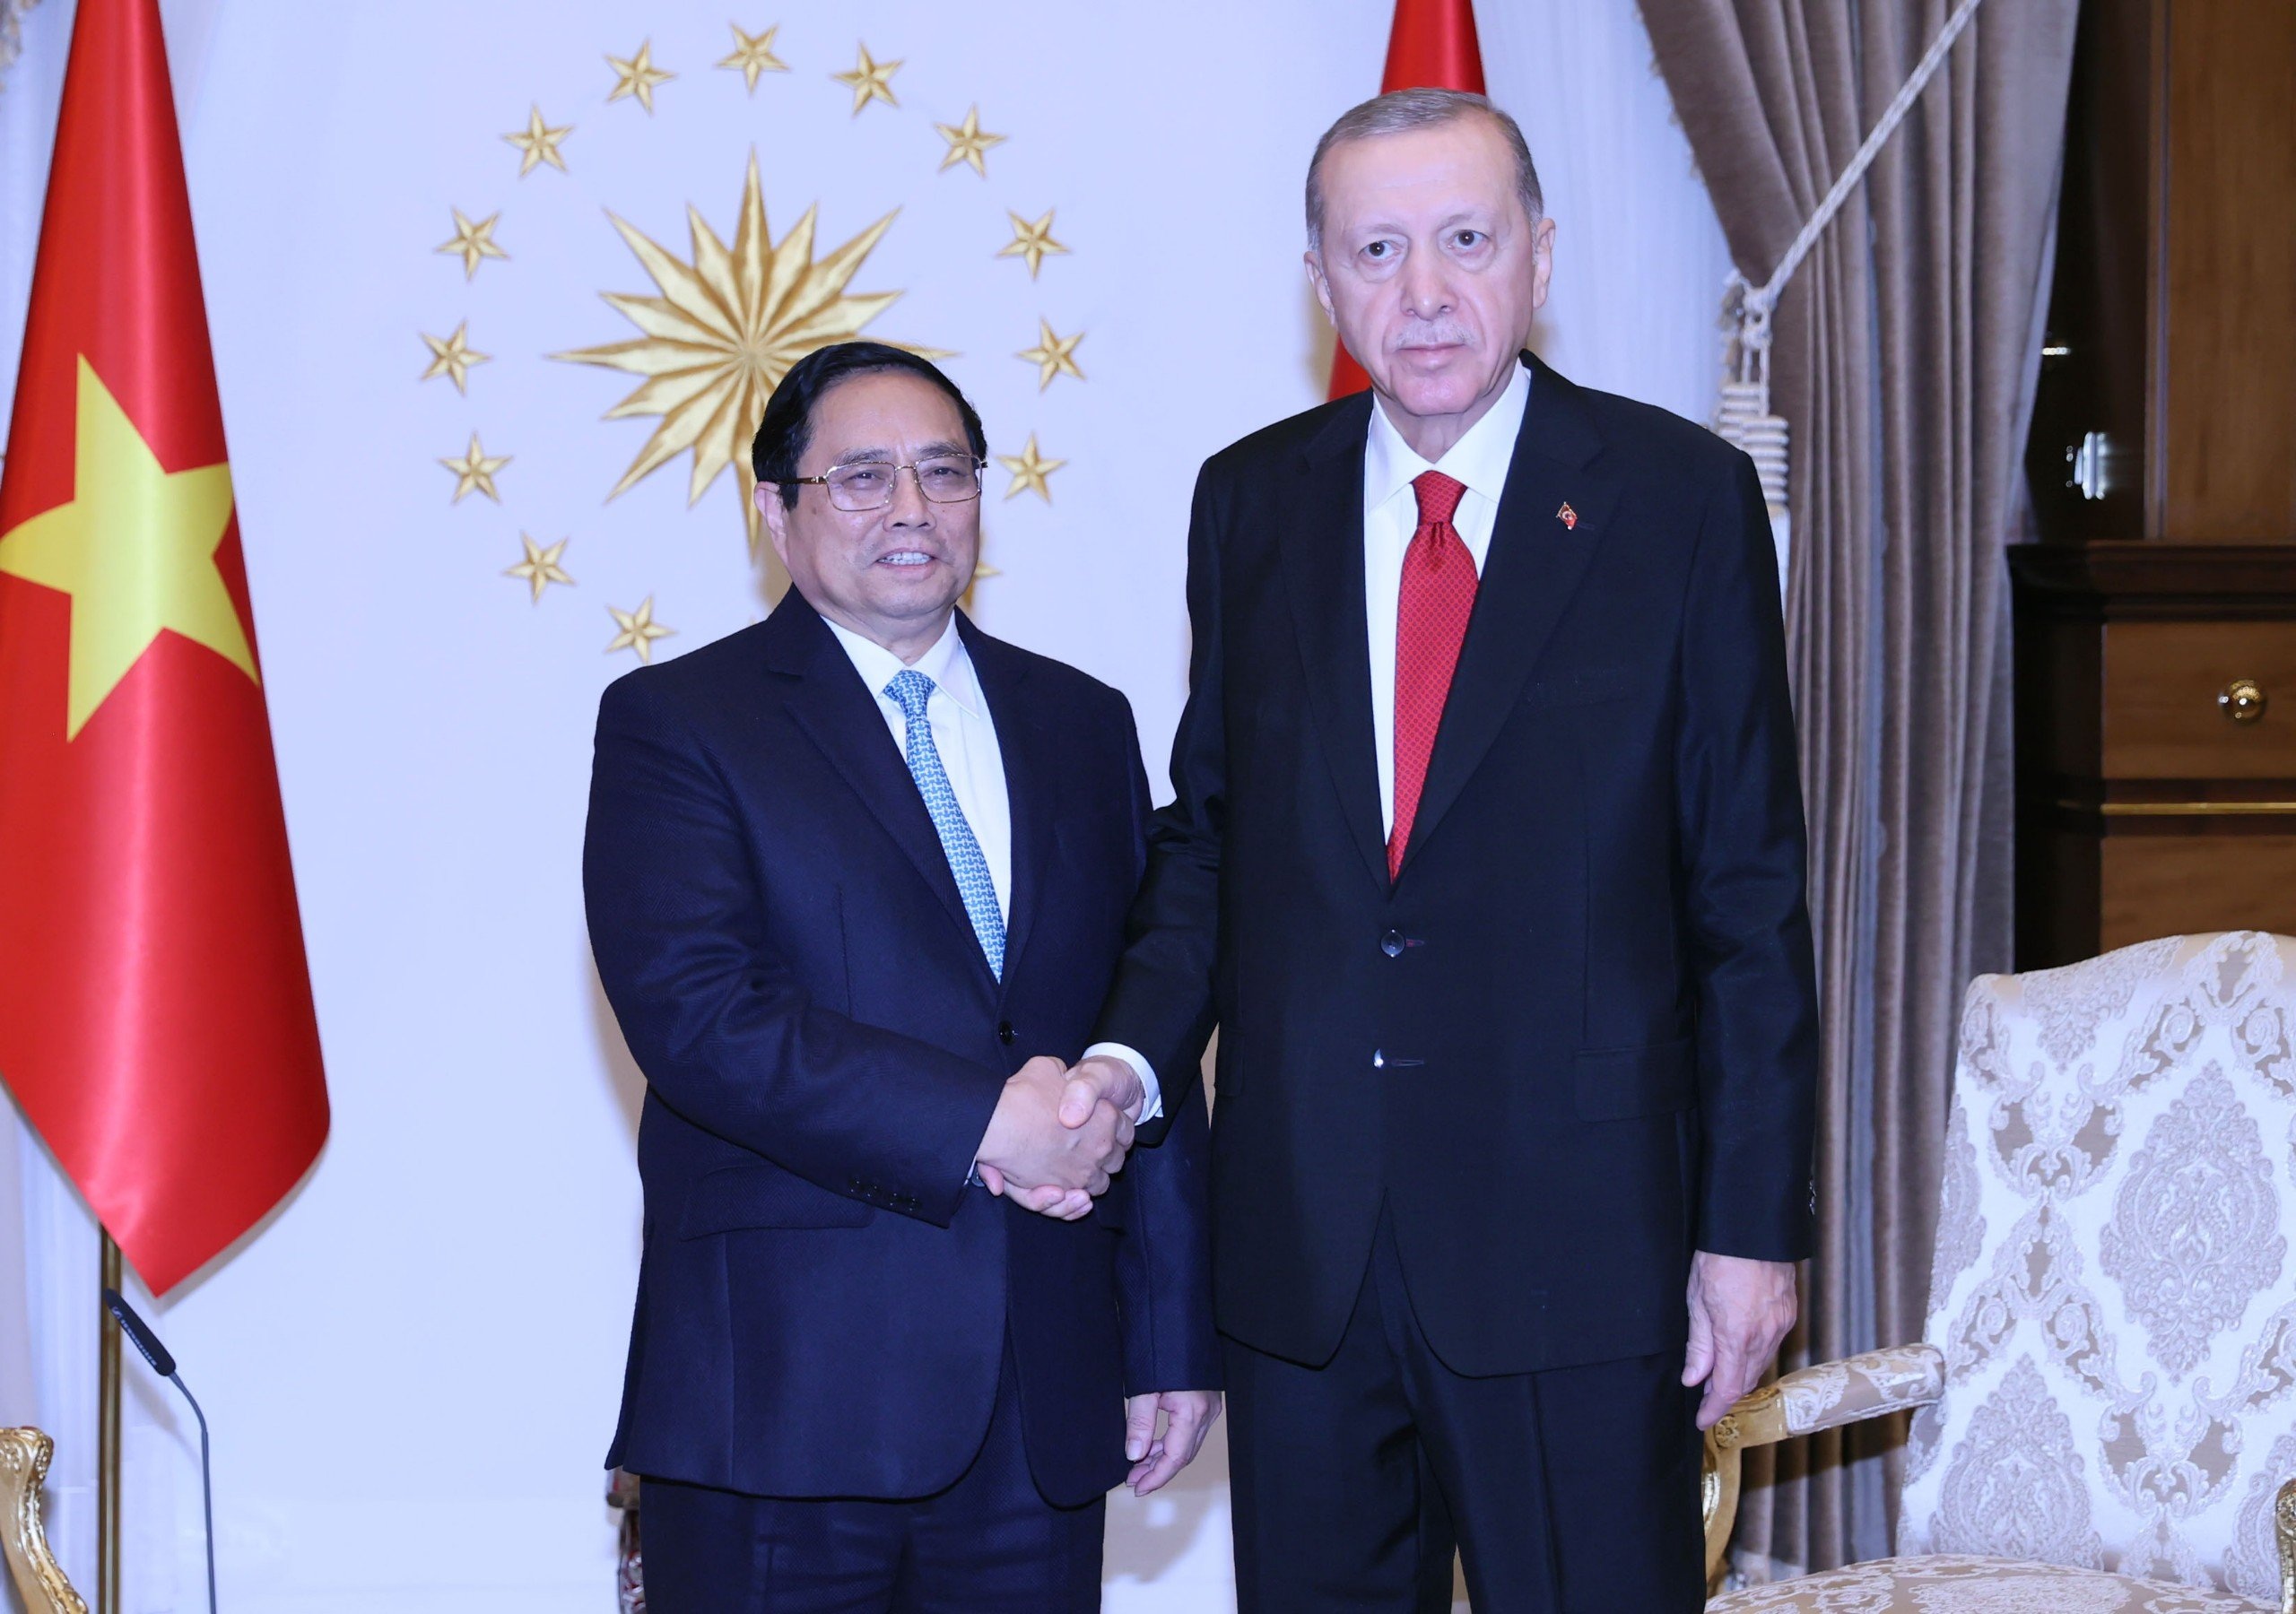 Dấu ấn 50 hoạt động của Thủ tướng trong 5 ngày ở Thổ Nhĩ Kỳ và UAE - 3